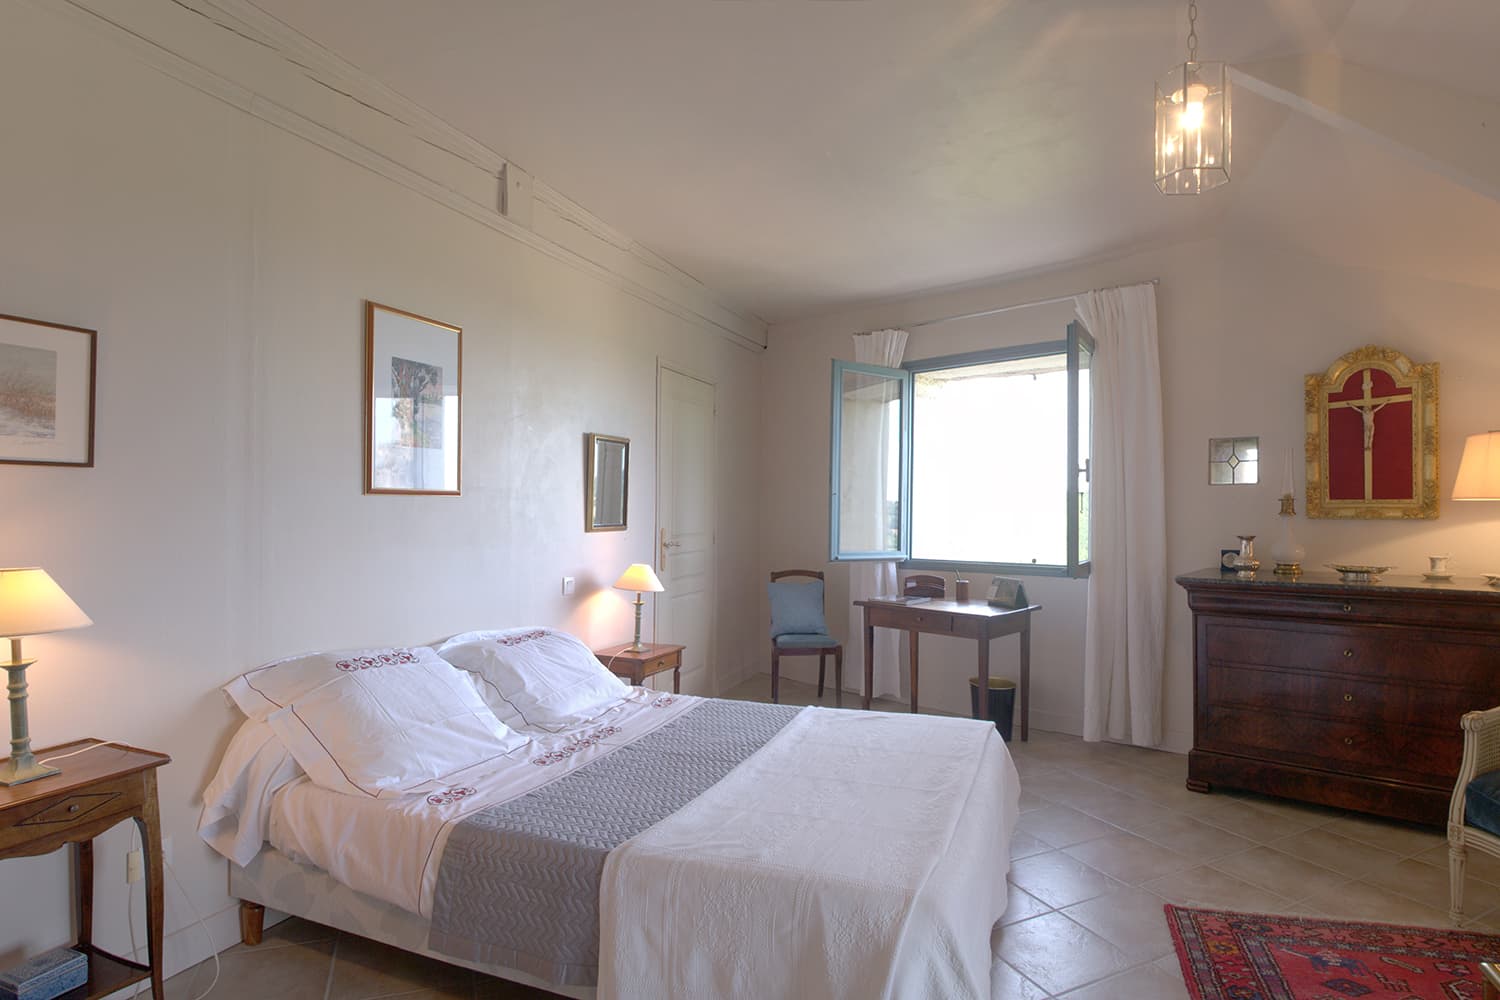 Bedroom | South West France rental home